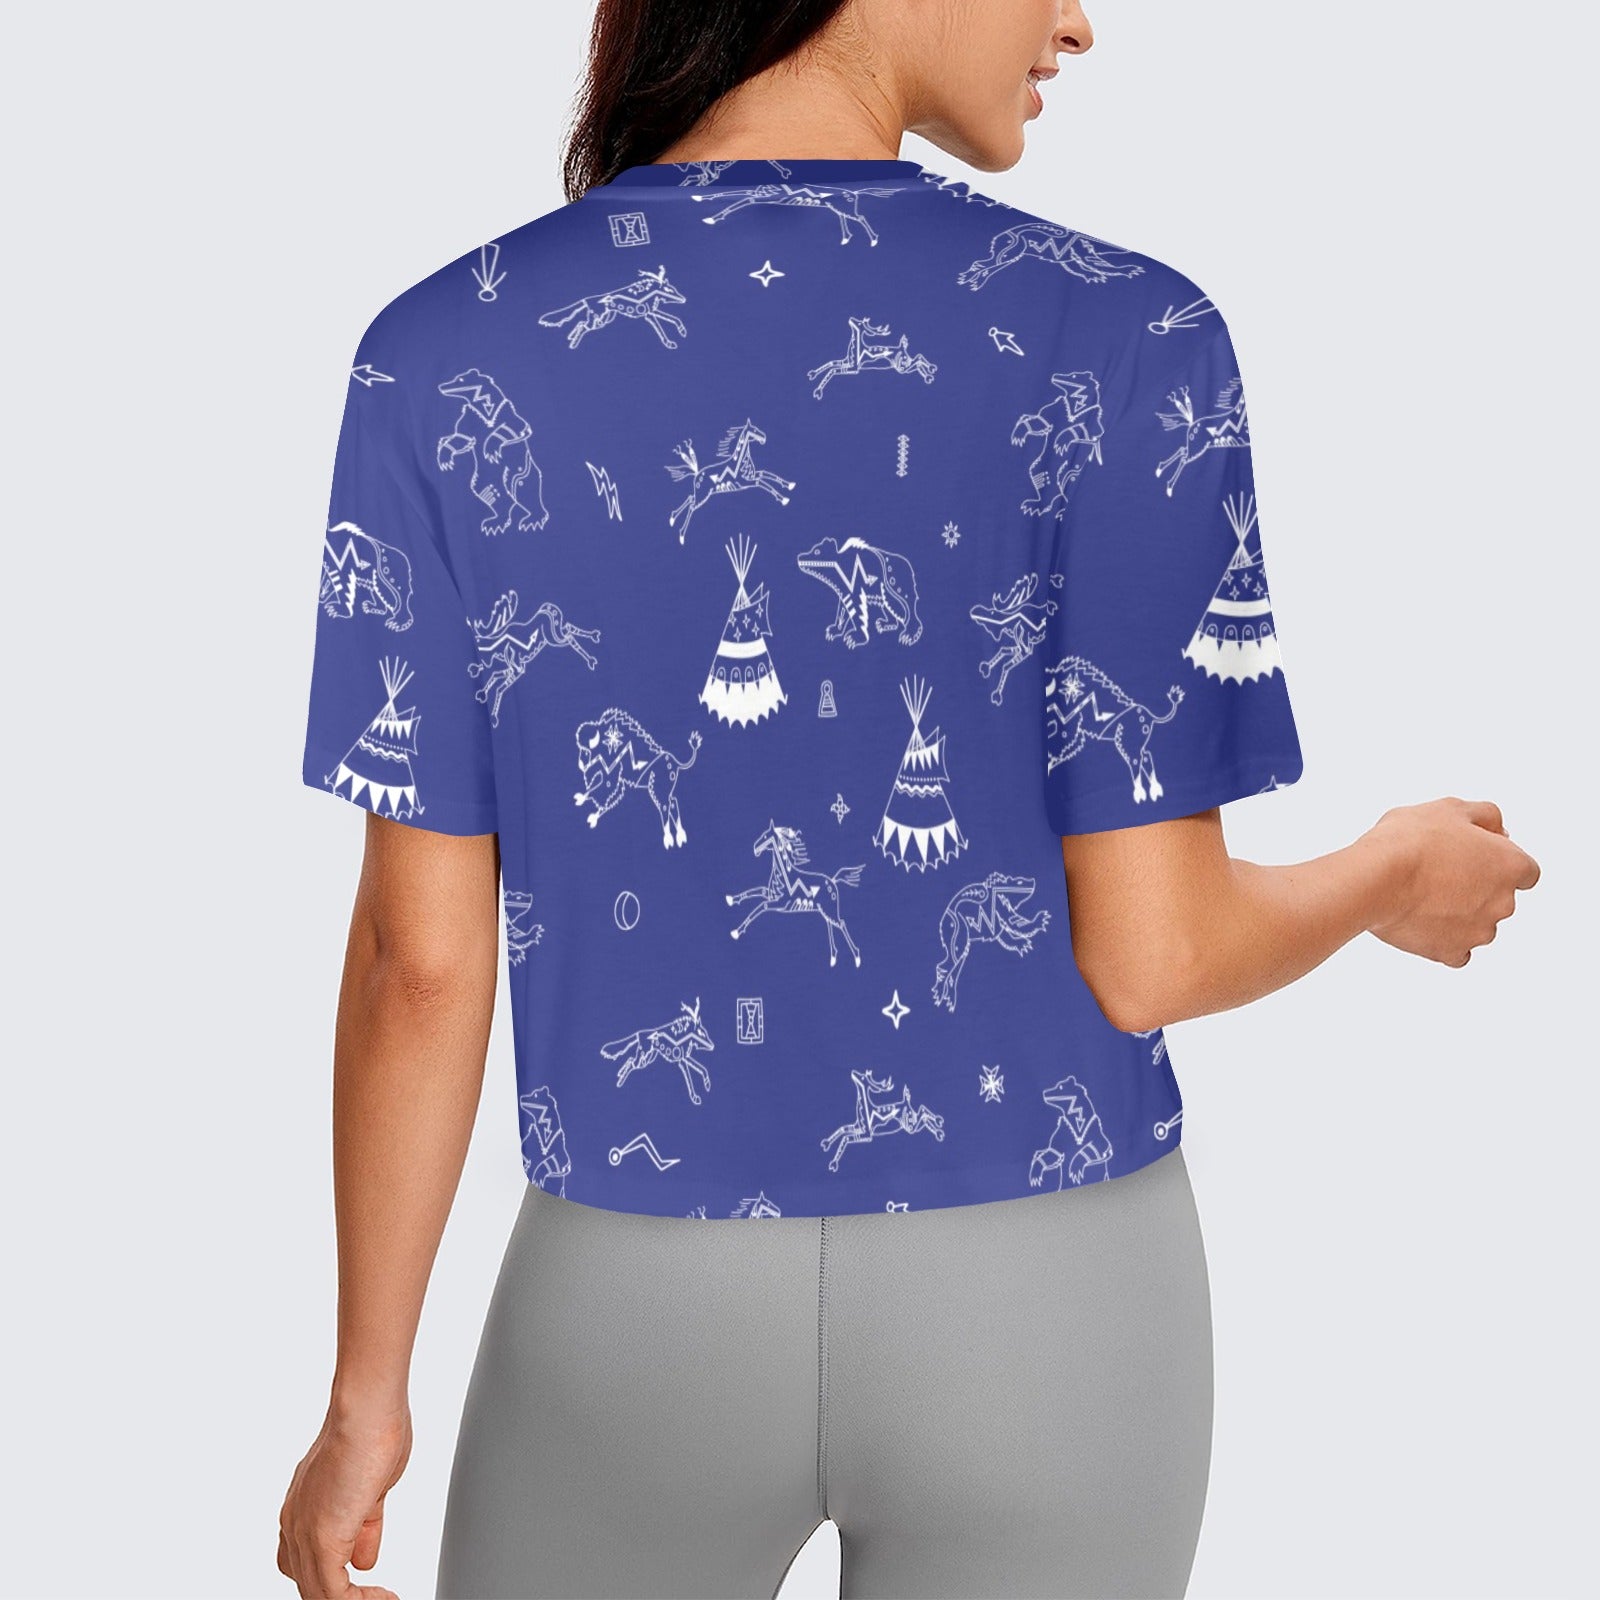 Ledger Dables Blue Women's Cropped T-shirt